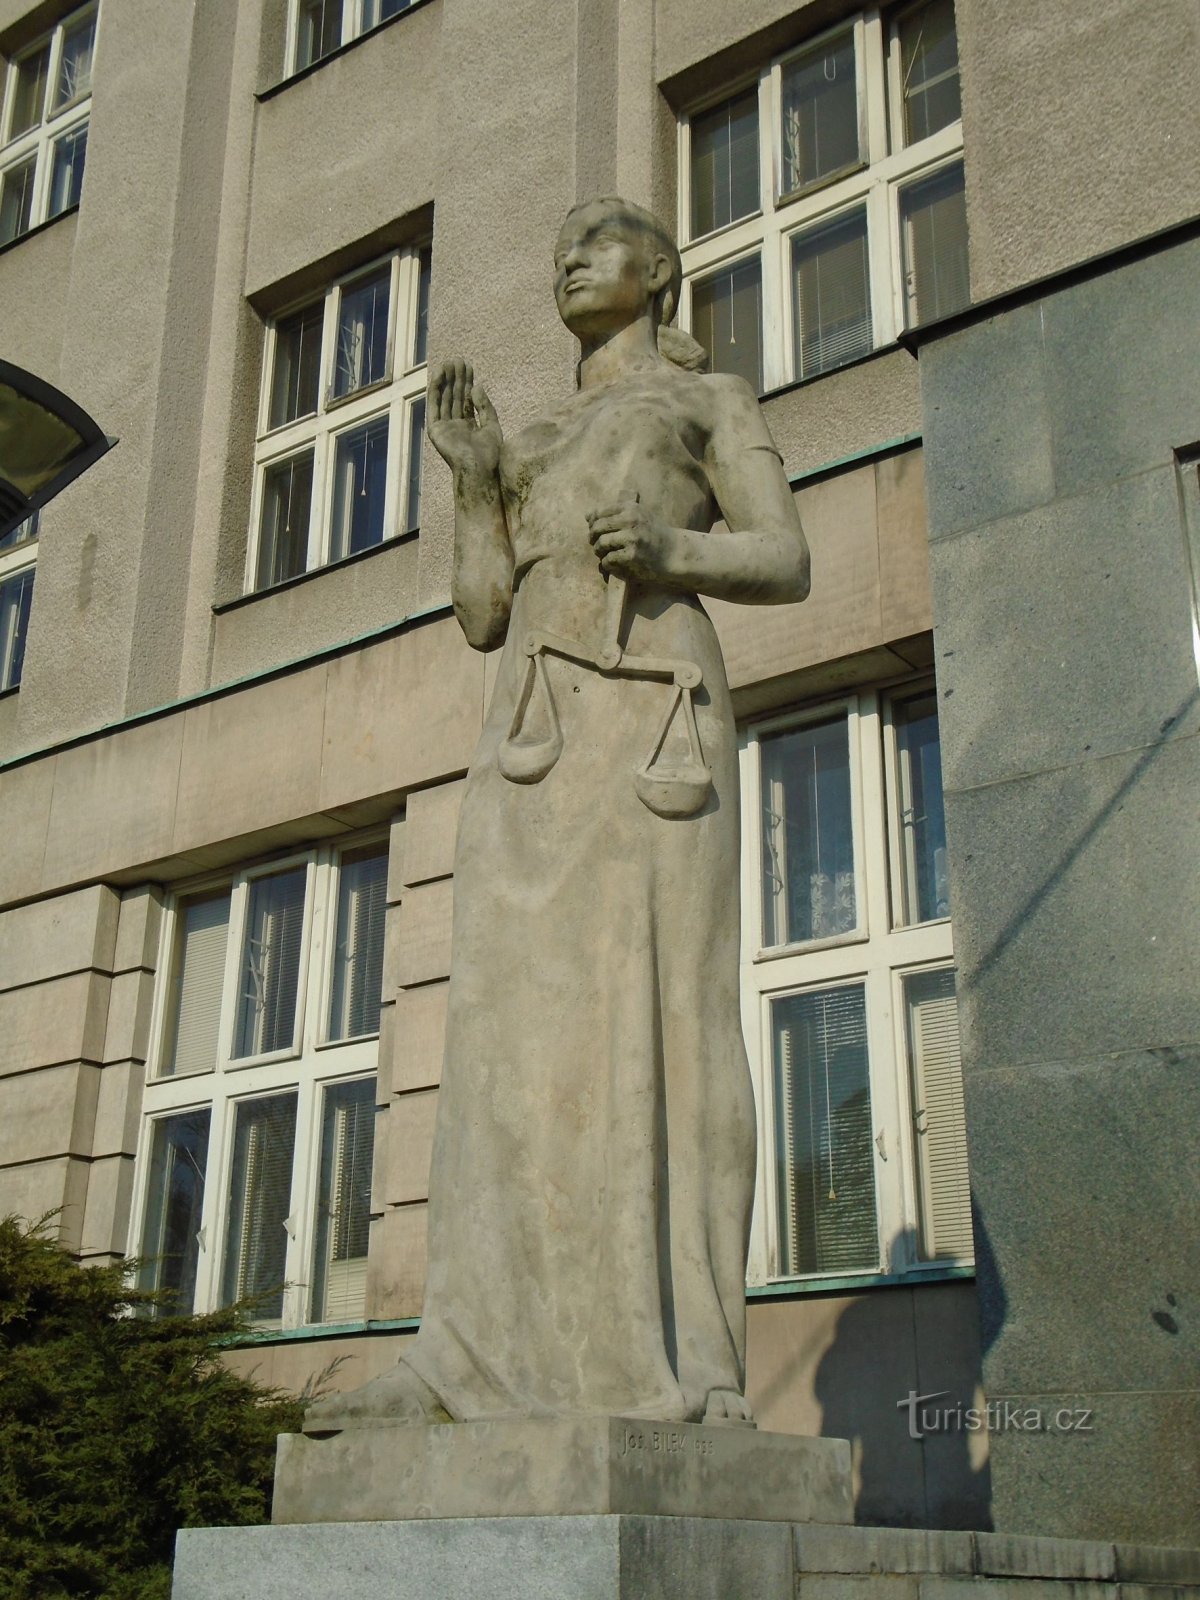 Tượng Công lý ở lối vào tòa án khu vực (Hradec Králové, ngày 1.4.2018 tháng XNUMX năm XNUMX)